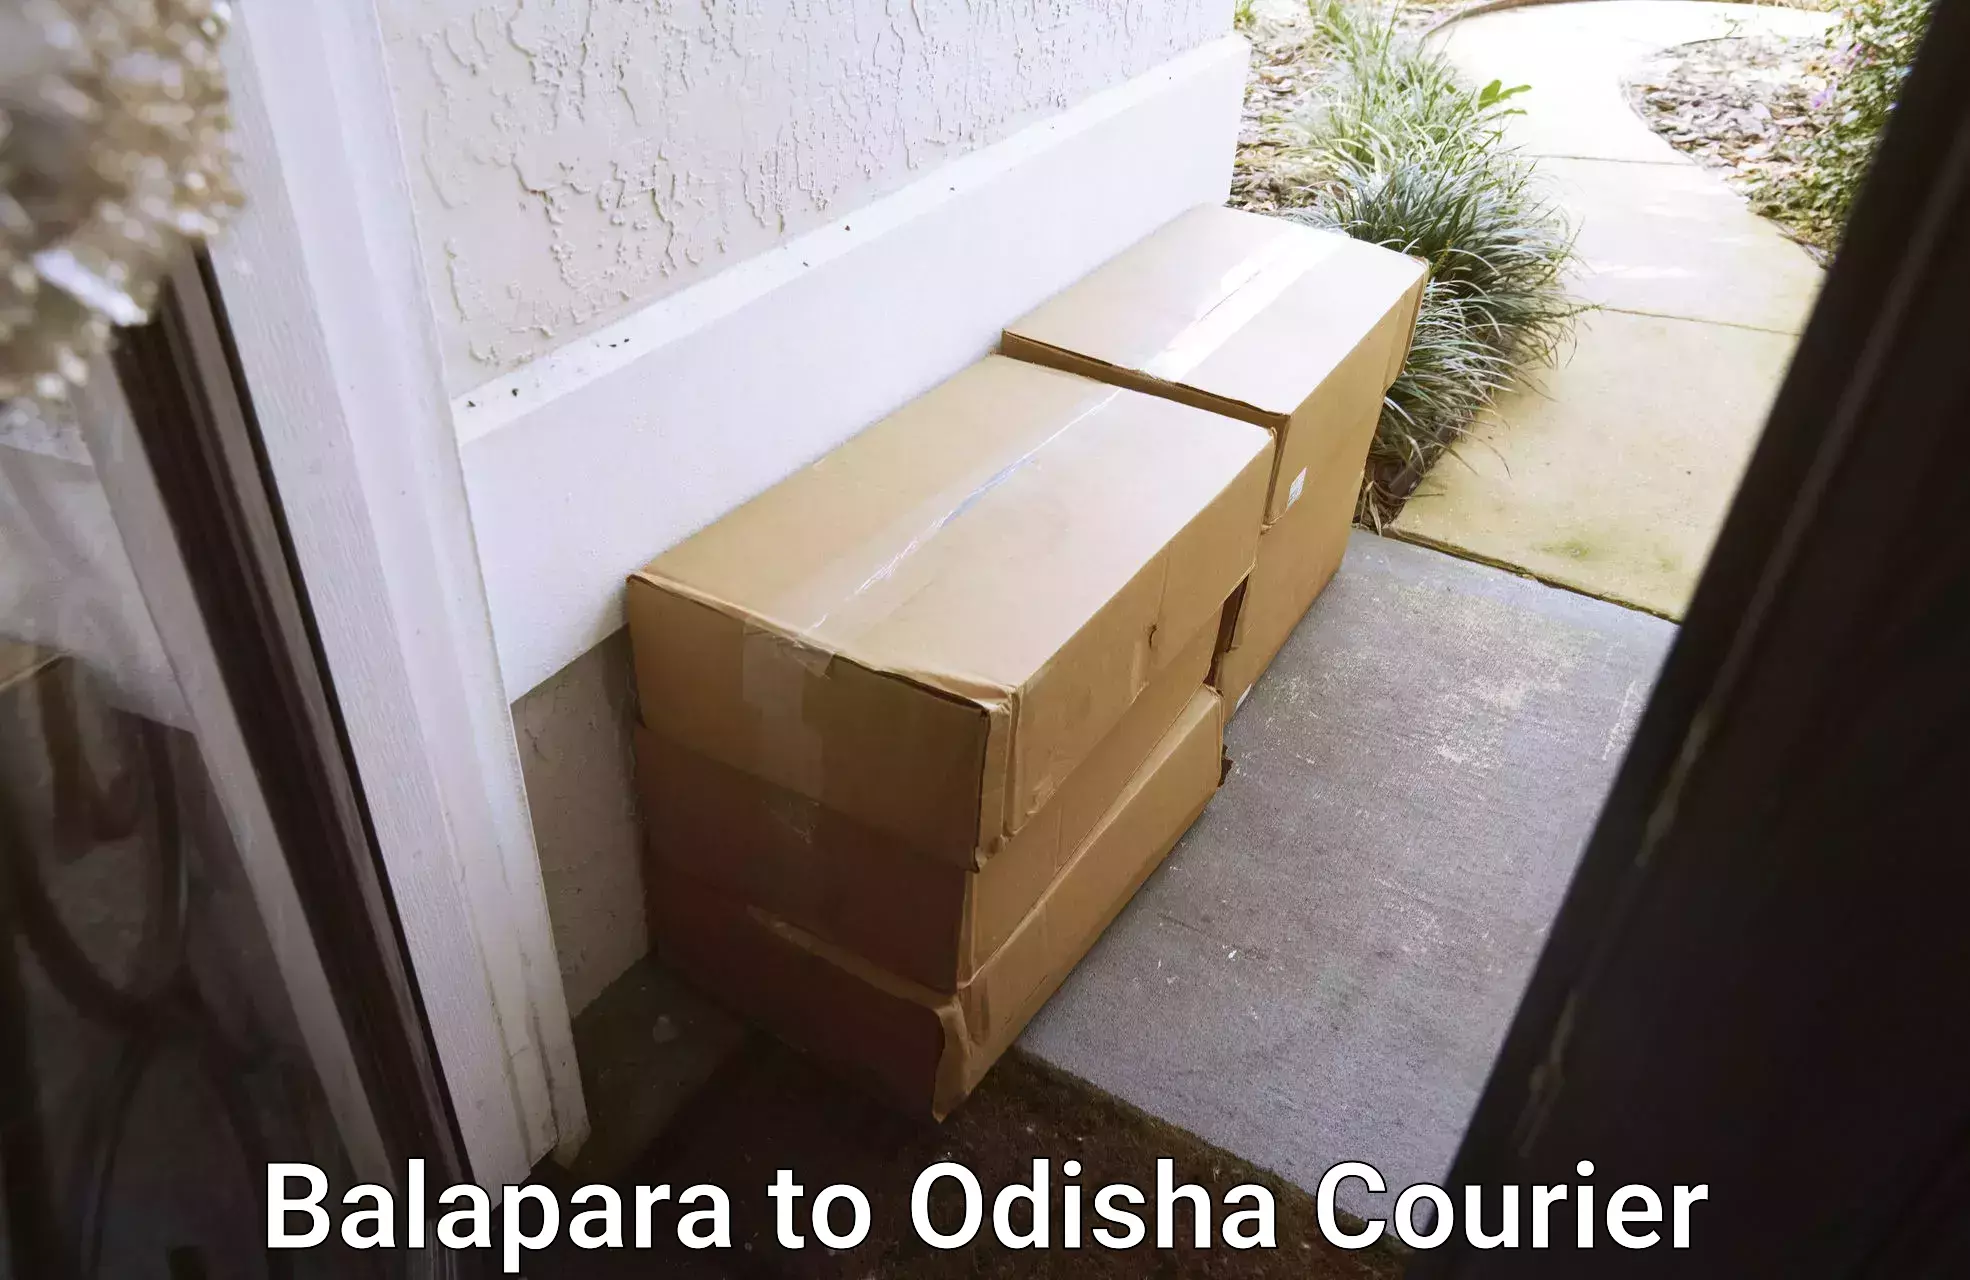 Fragile item shipping in Balapara to Bahalda